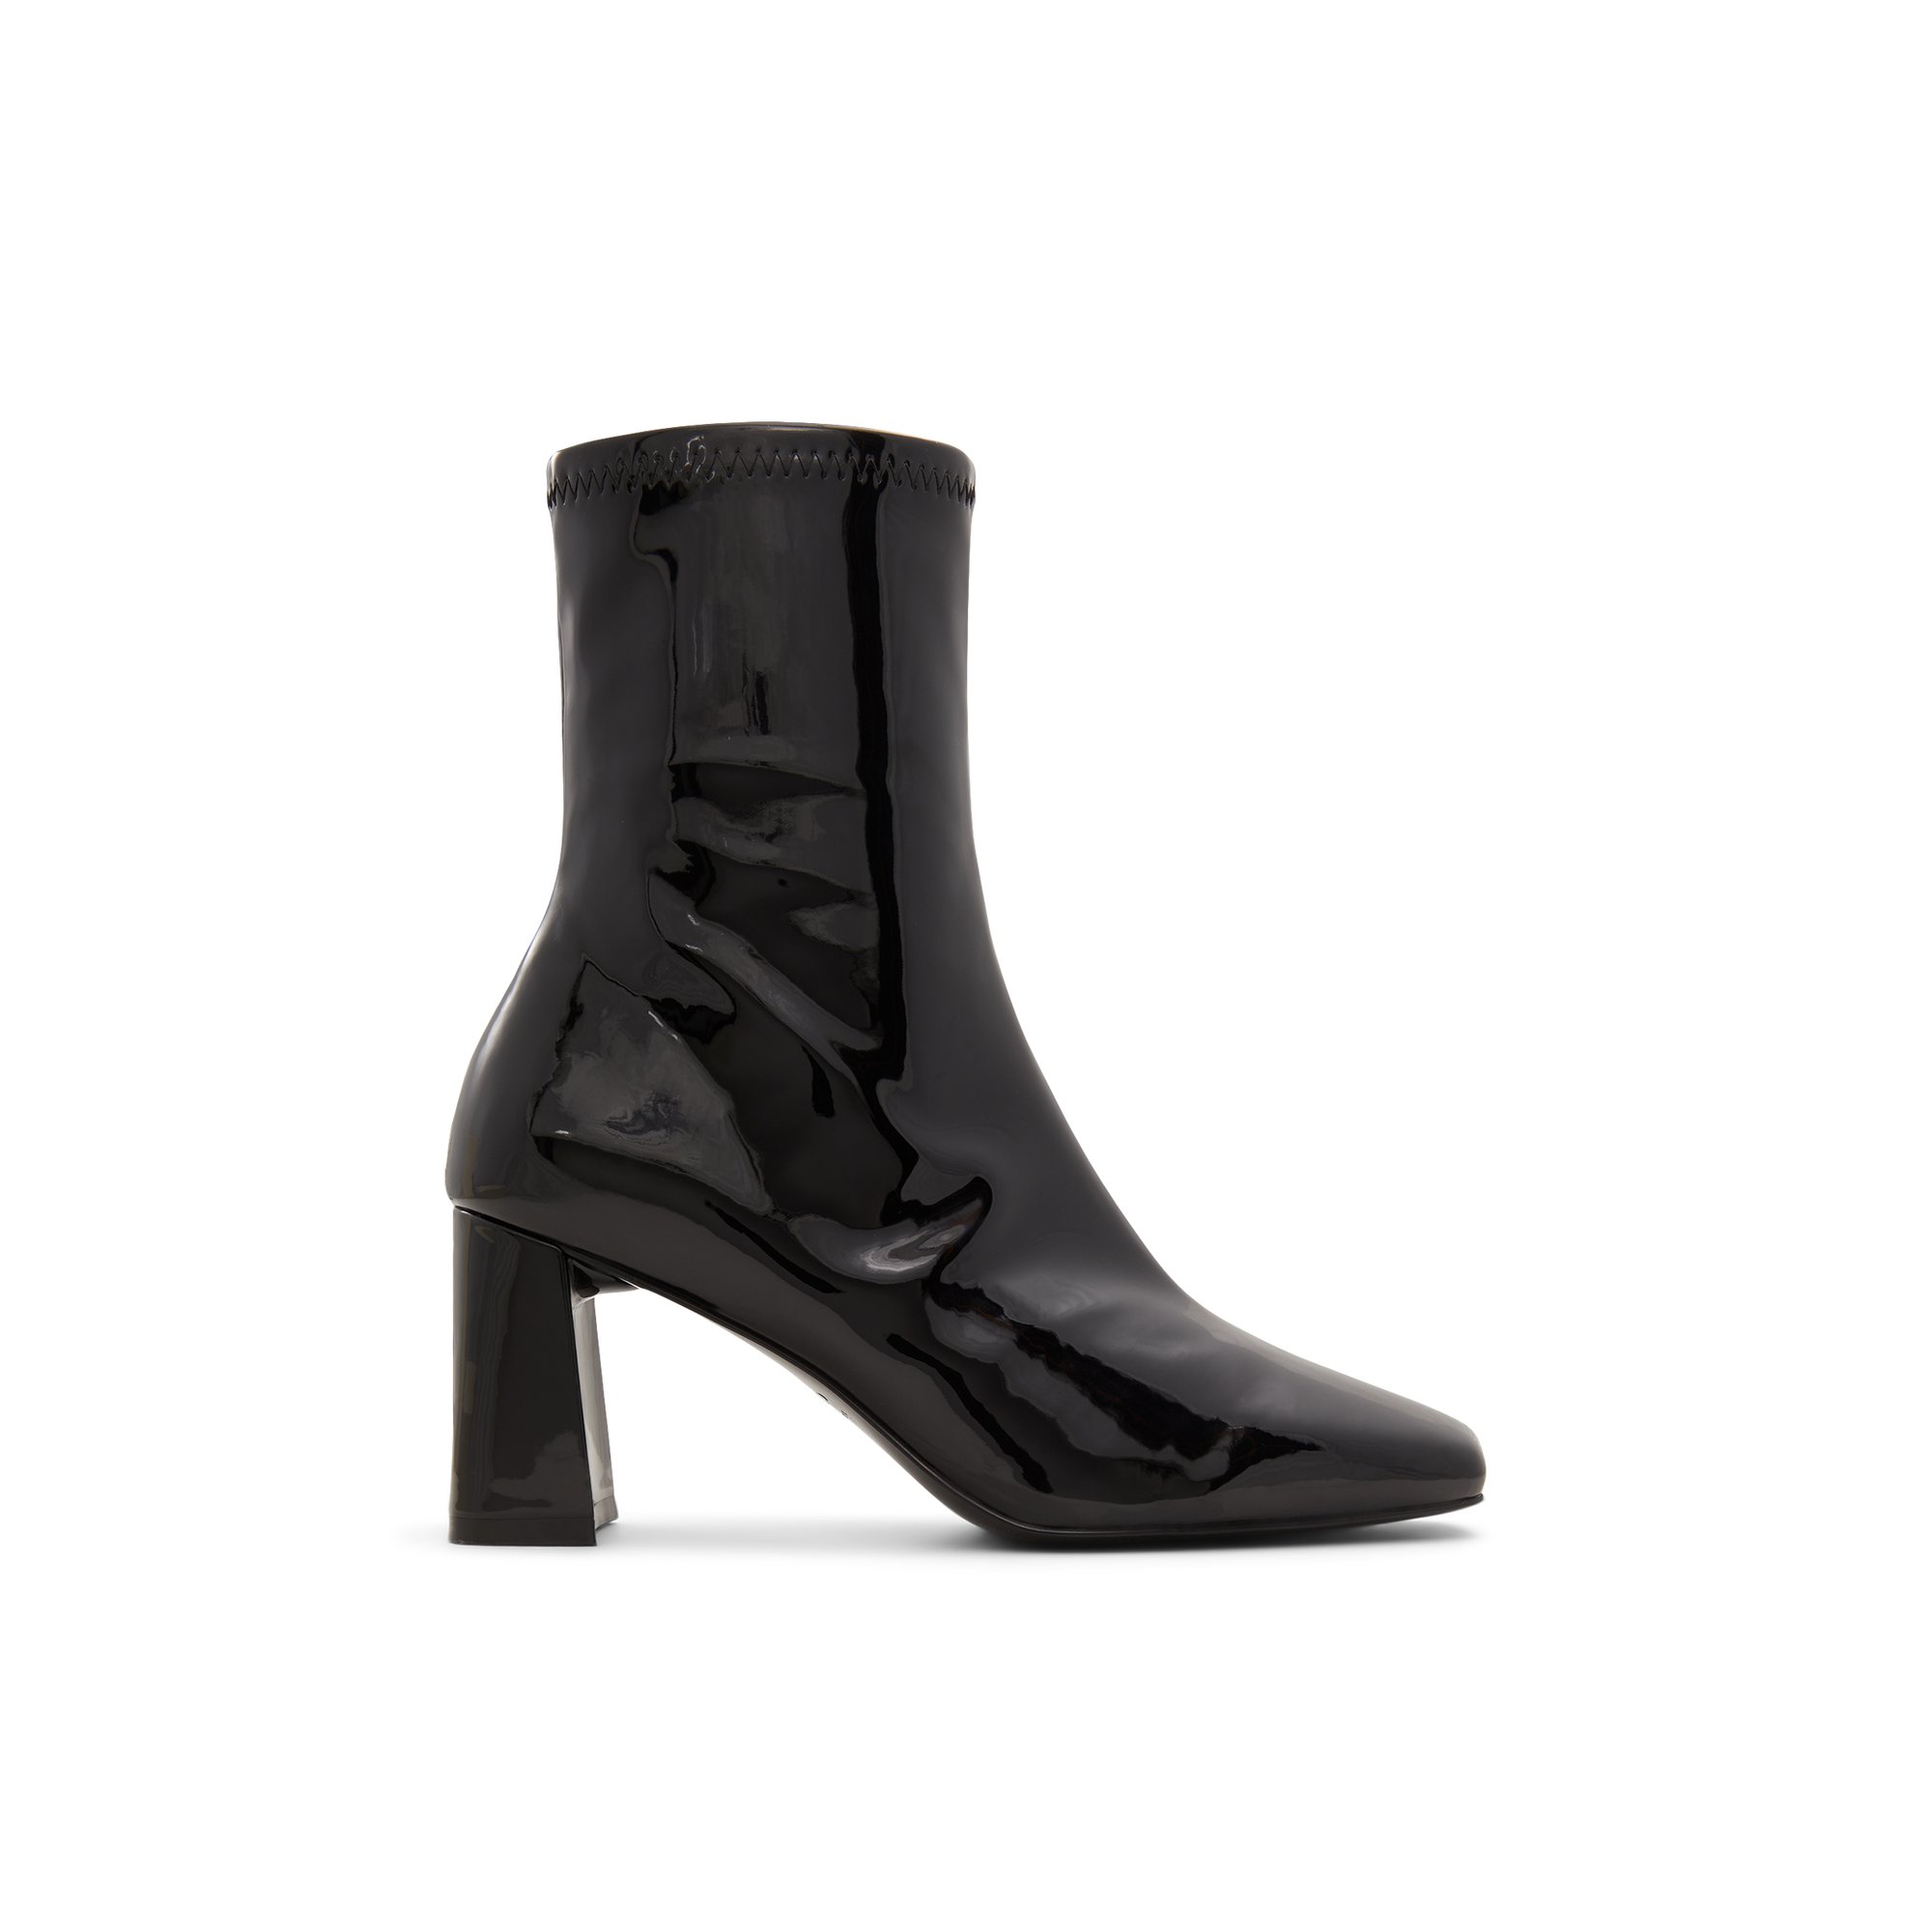 ALDO Marcella - Women's Dress Boot - Black